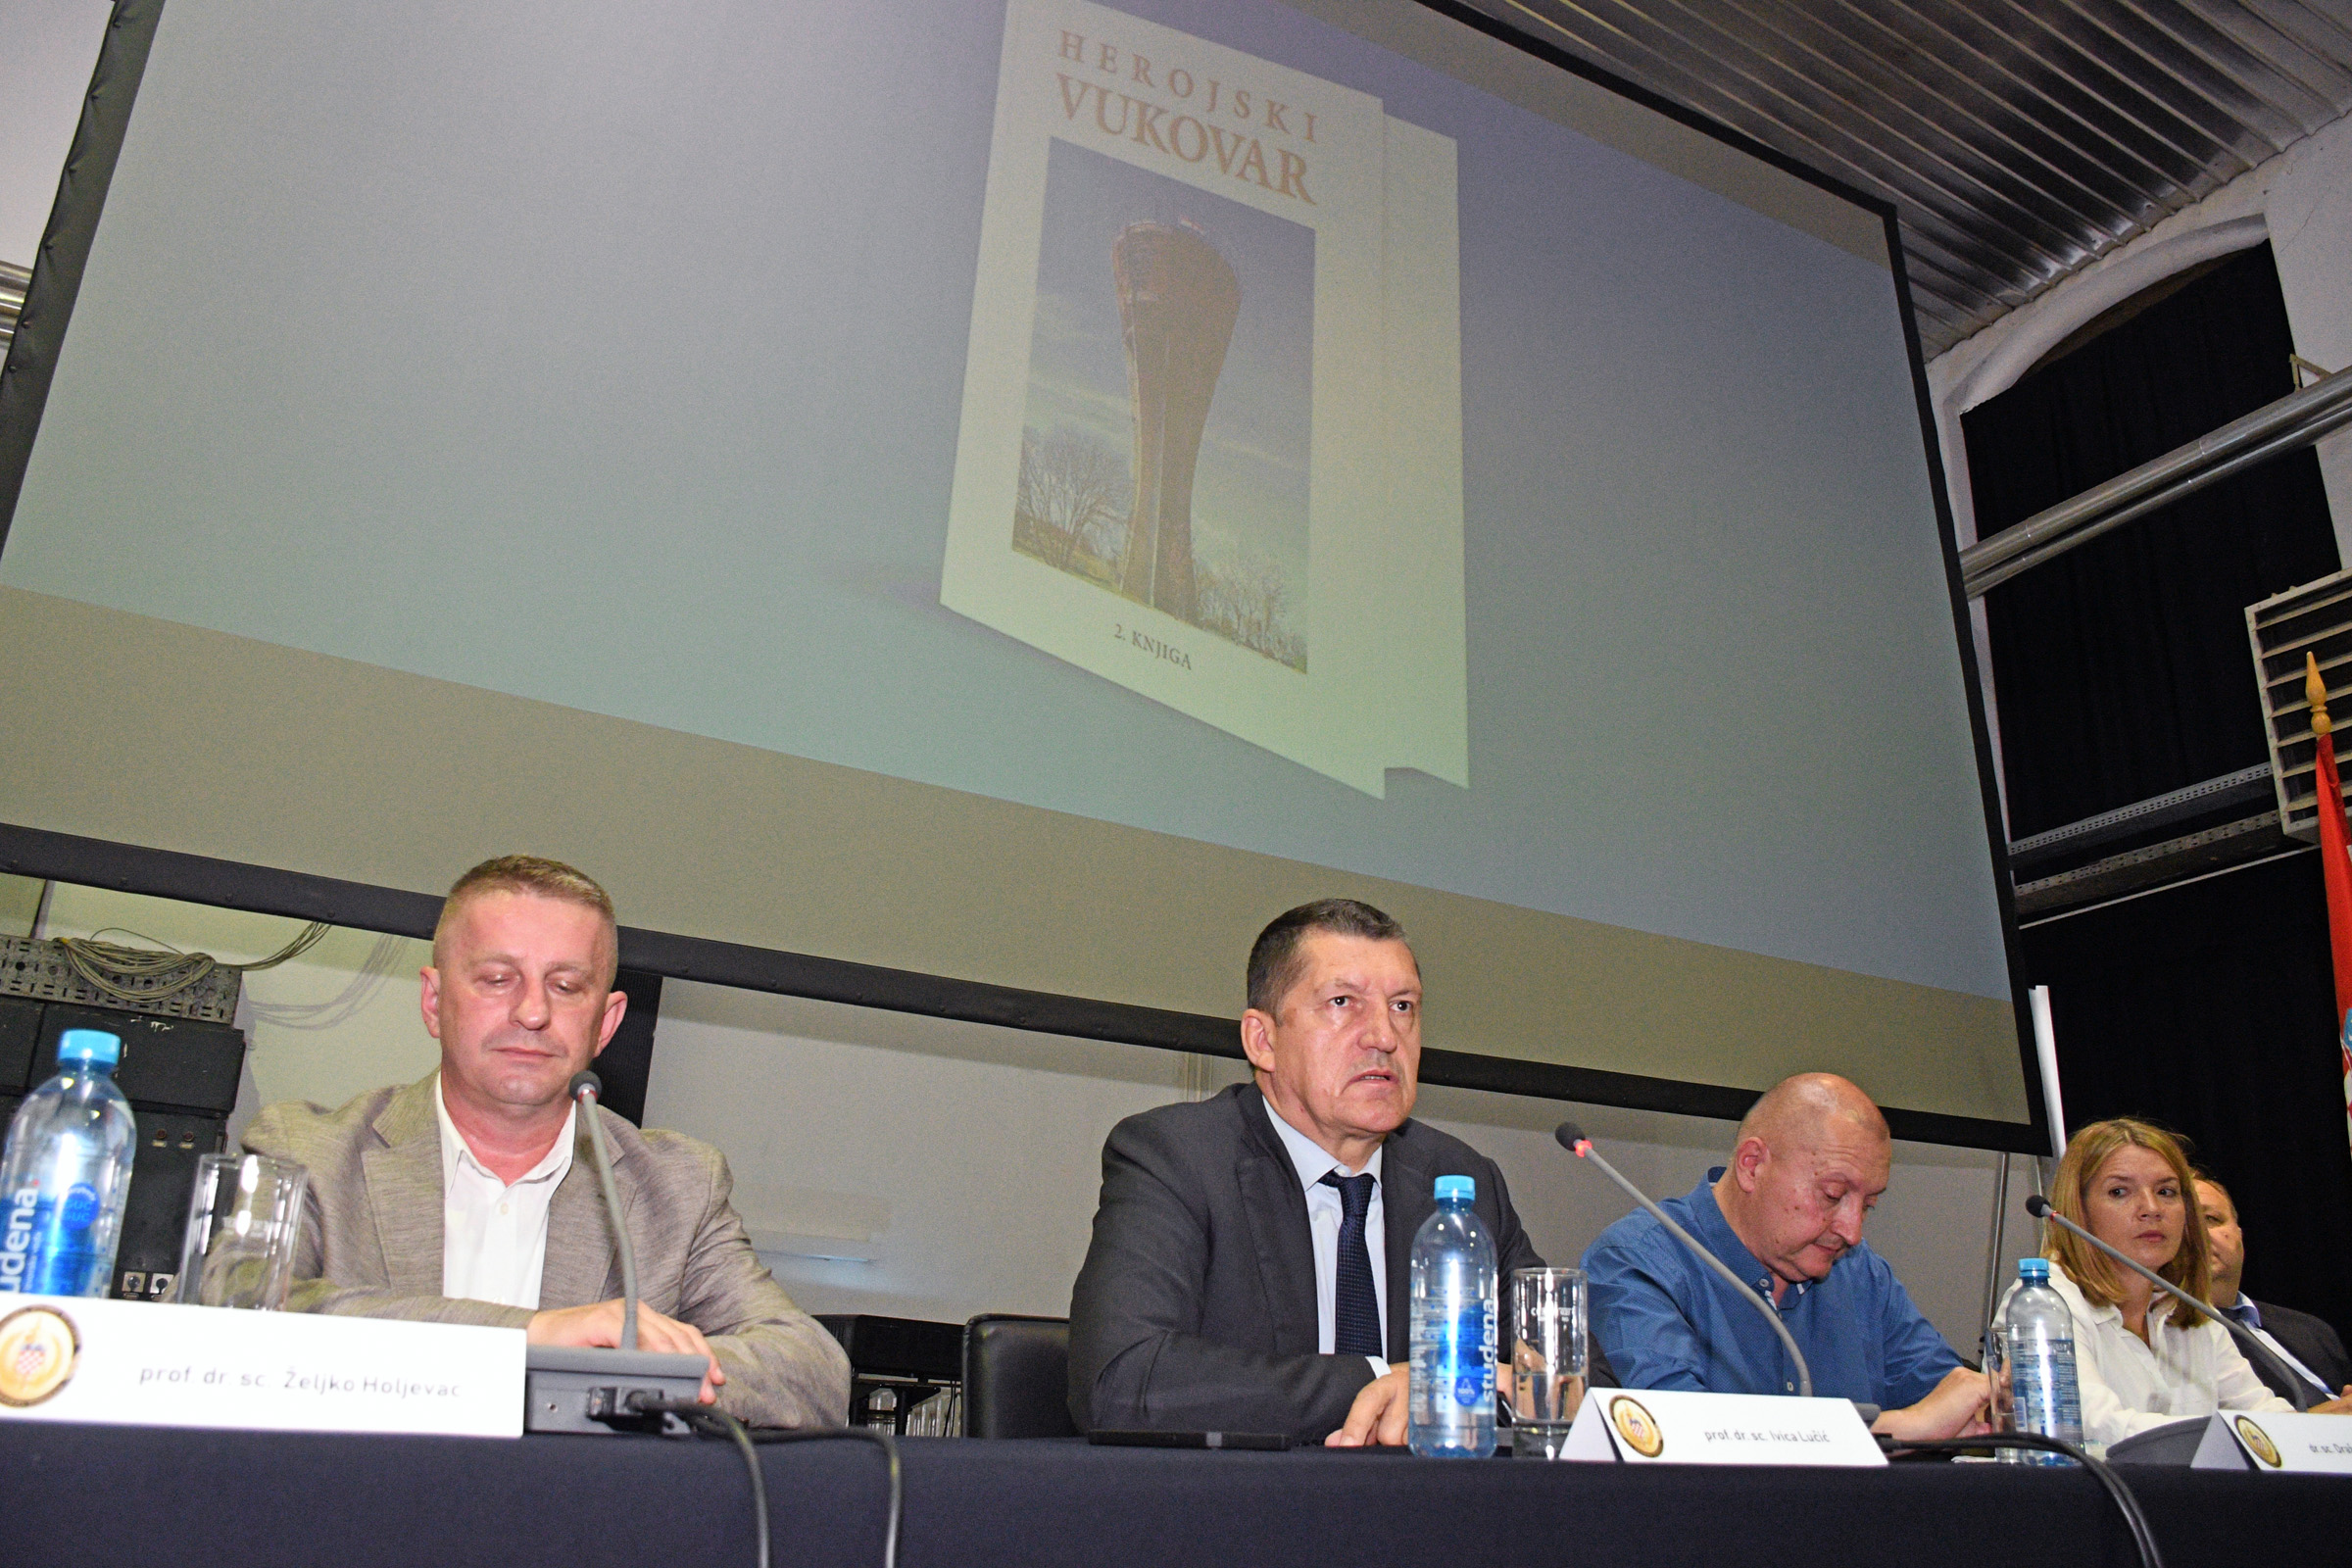 Ministar Banožić o projektu Herojski Vukovar: Vukovar ostaje temelj naše samostalnosti i slobode